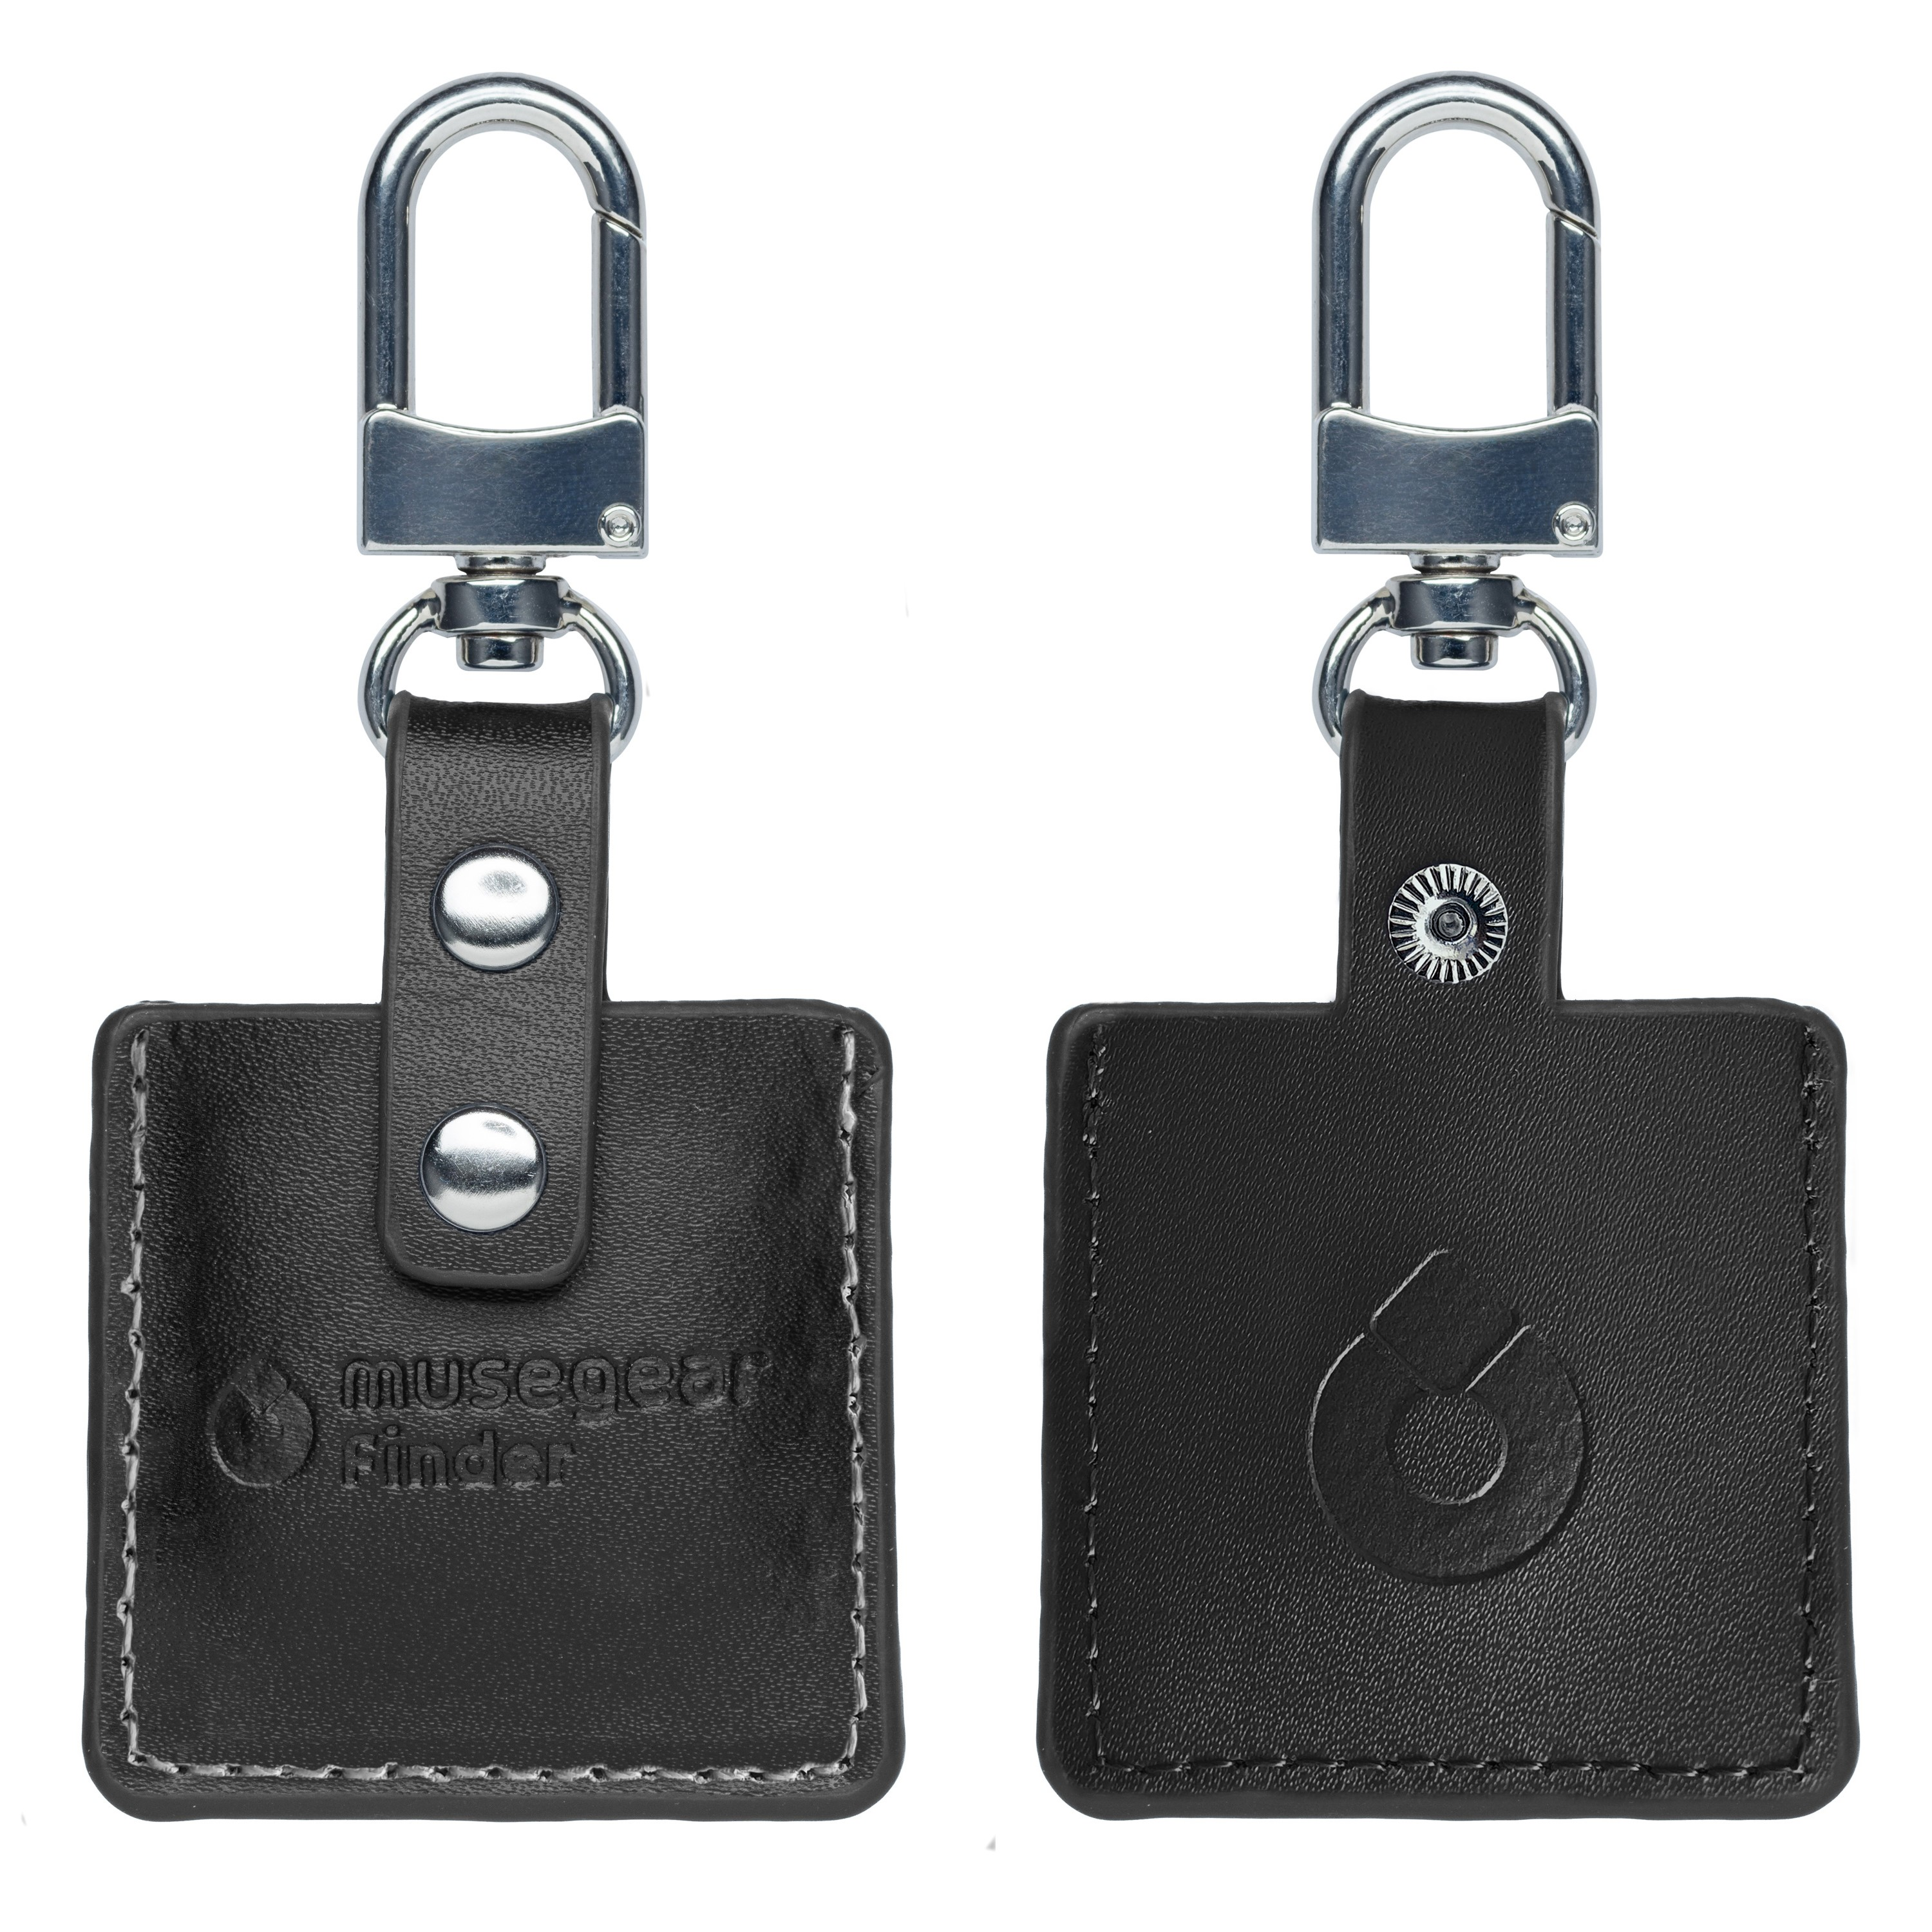 MUSEGEAR Schlüsselfinder mit Bluetooth Deutschland Schlüsselfinder Bluetooth aus App